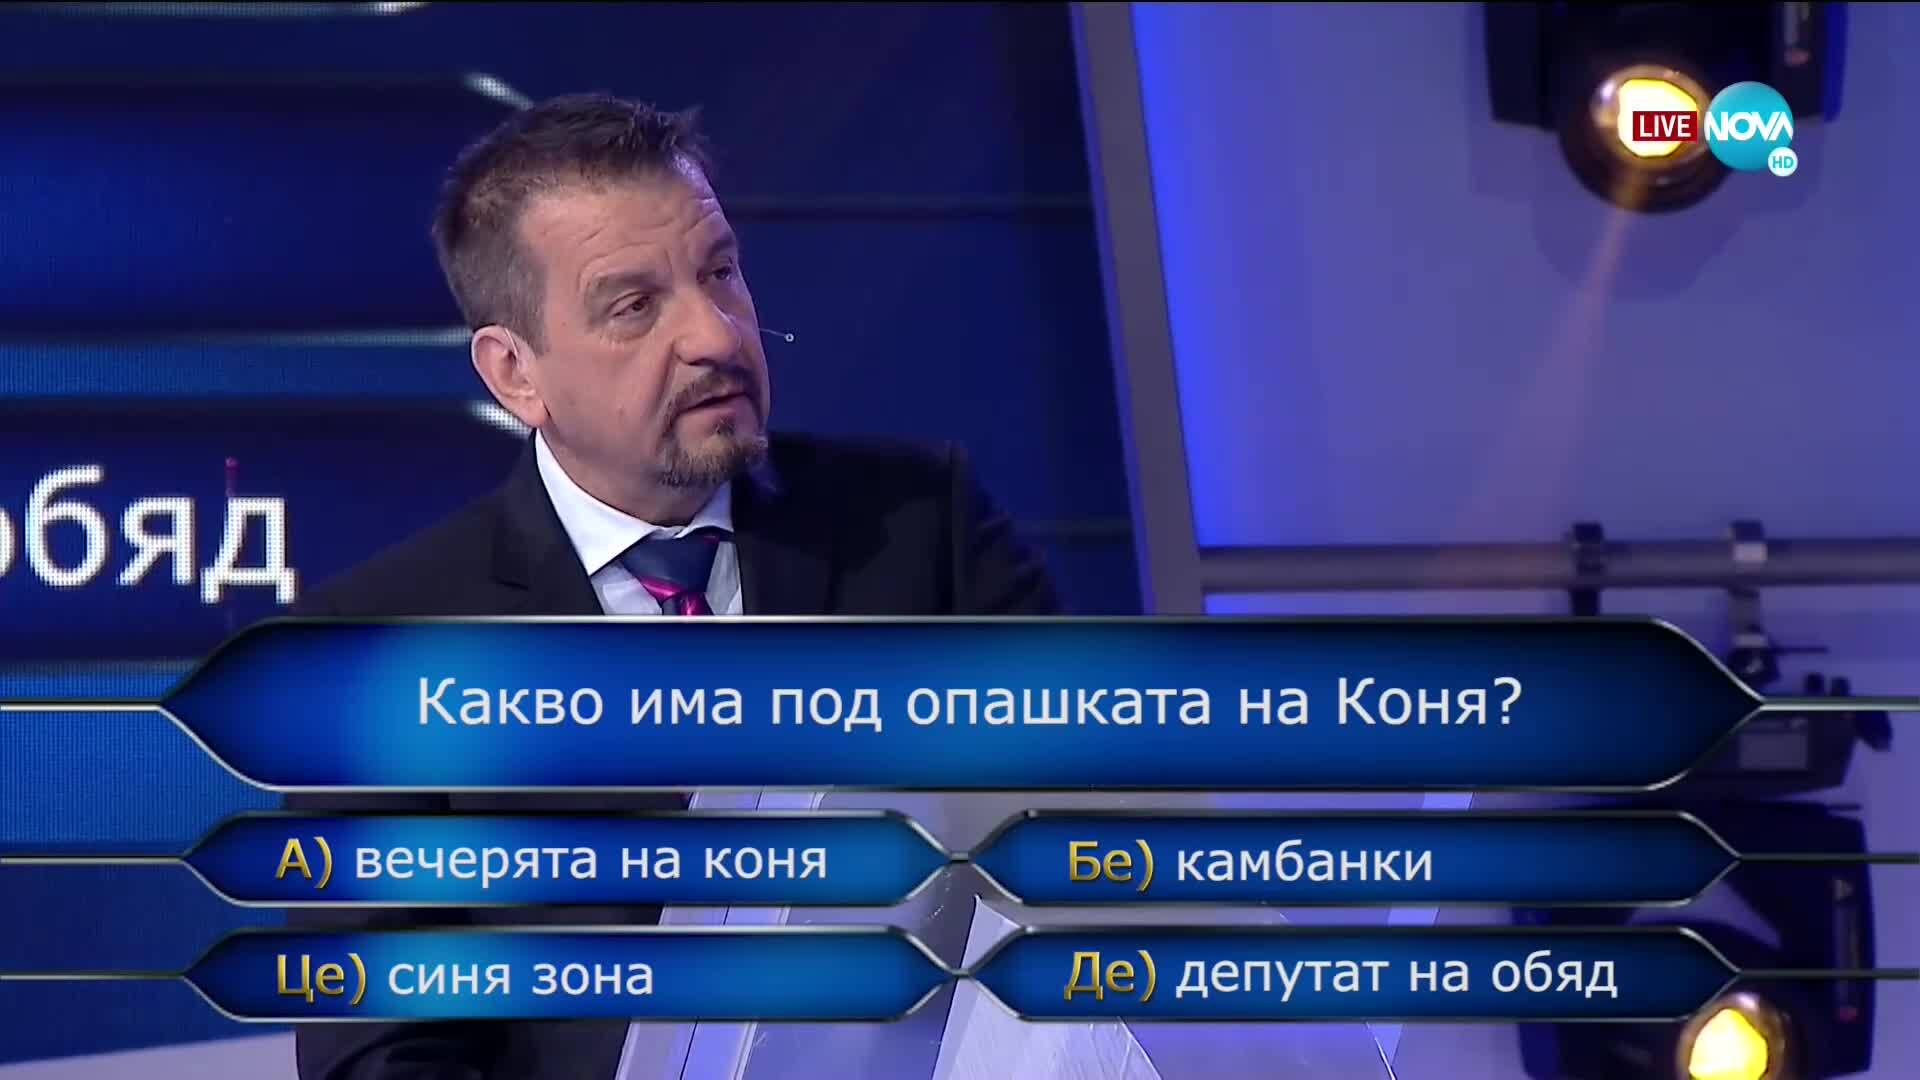 Ники Кънчев играе "Стани софиянец" в Забраненото шоу на Рачков (21.03.2021)